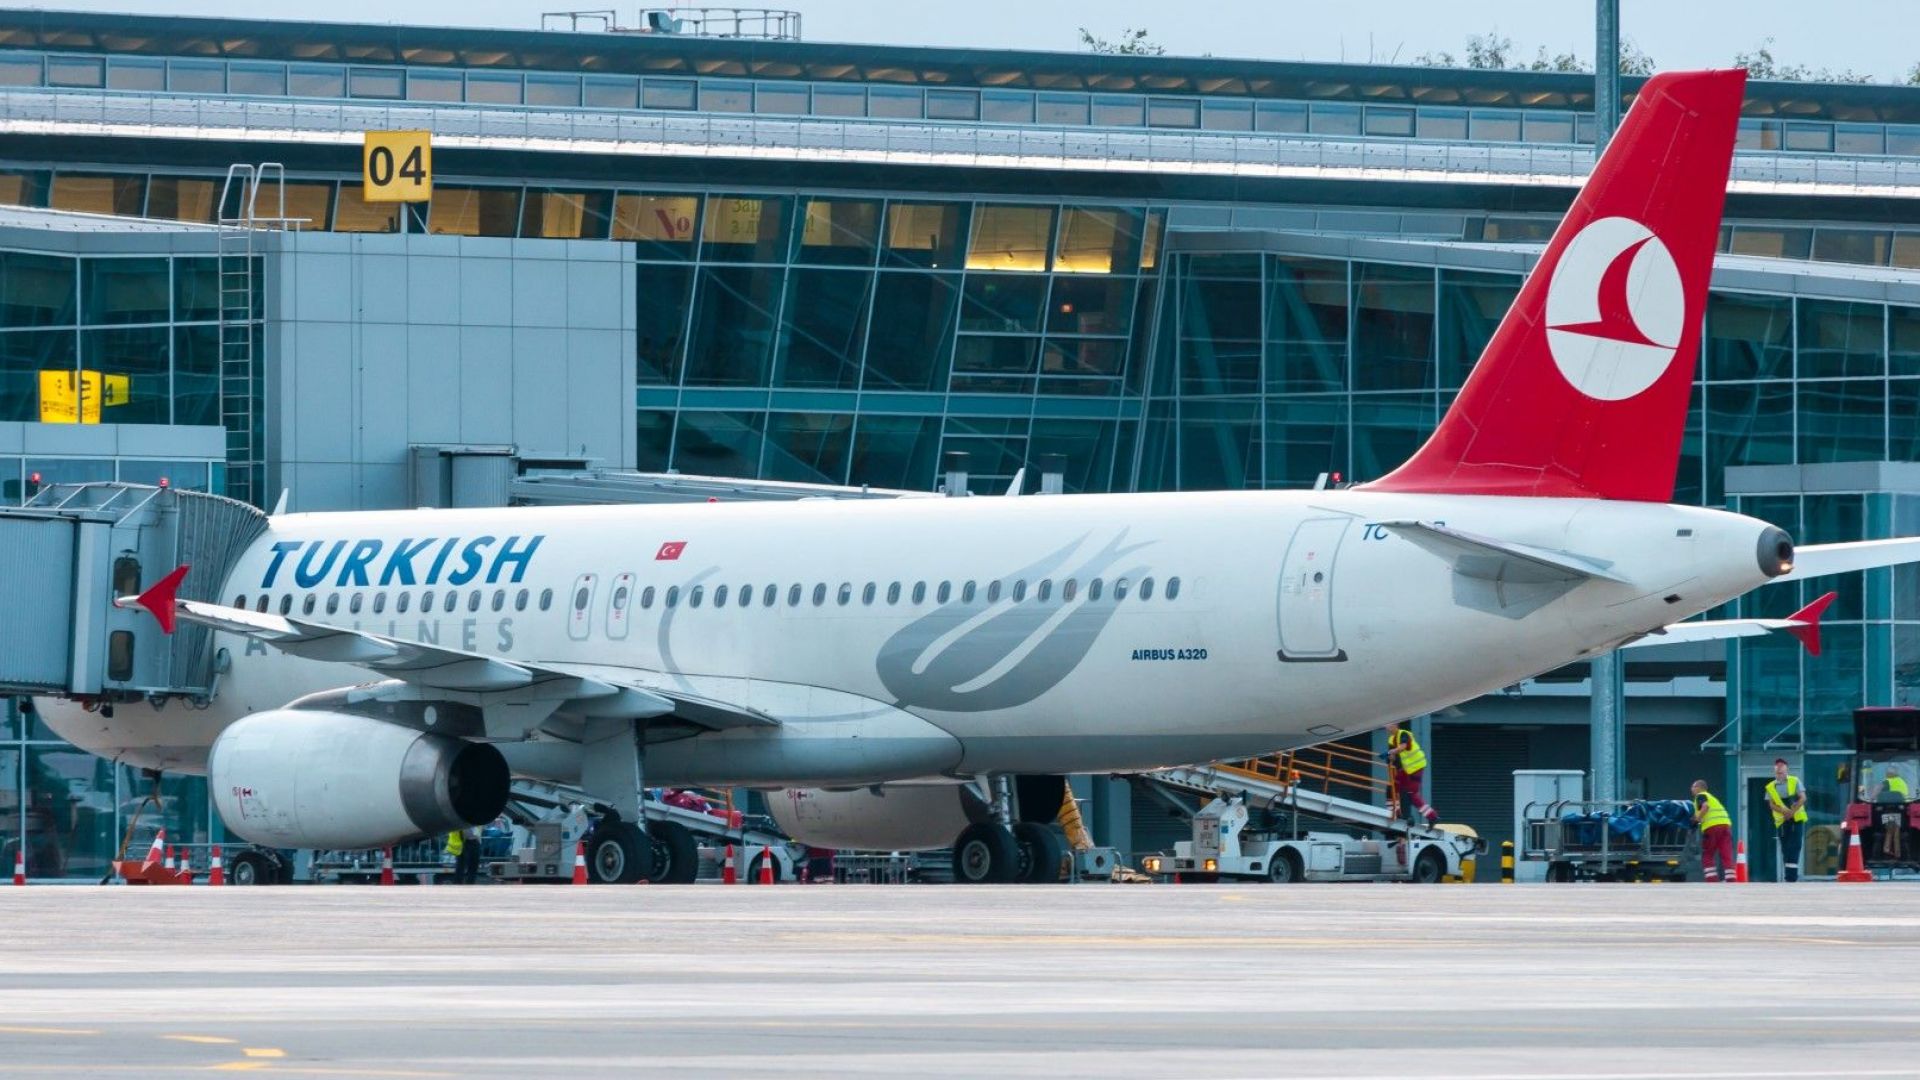 Самолет на Търкиш еърлайнс изпълняващ полет от Истанбул кацна успешно